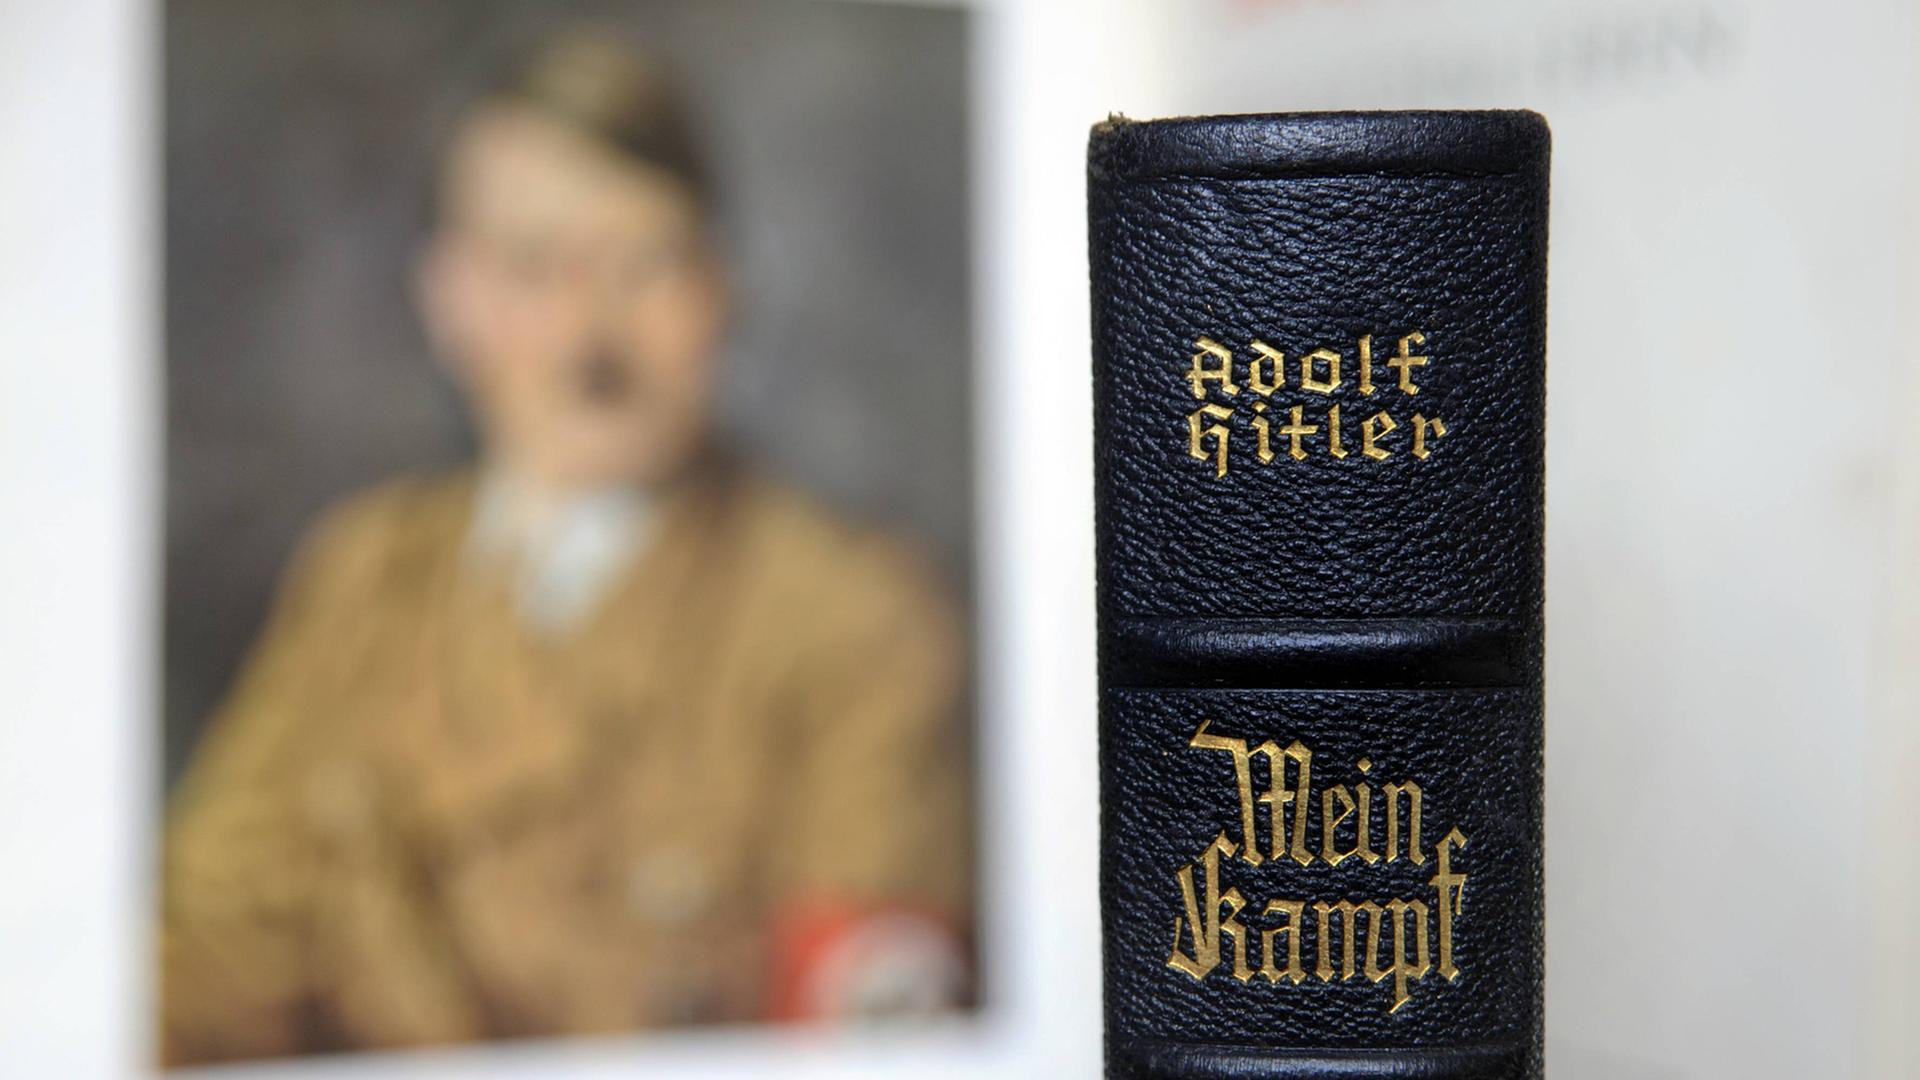 Der Buchrücken einer Ausgabe von Hitlers "Mein Kampf" vor einem unscharfen Porträtbild Hitlers.